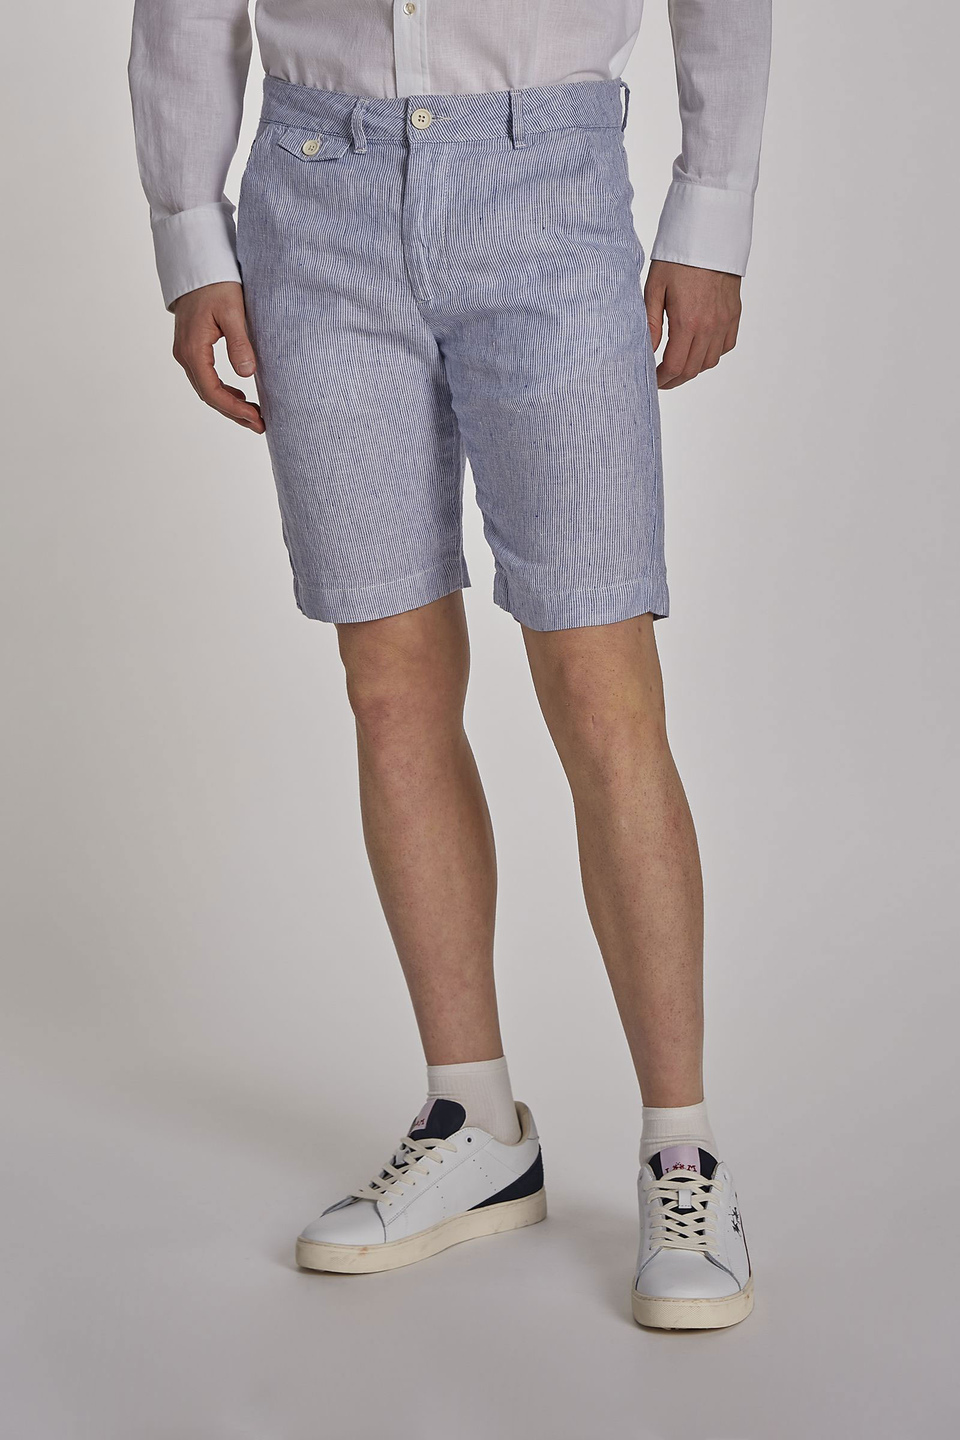 Men's regular-fit linen Bermuda shorts - La Martina - Official Online Shop